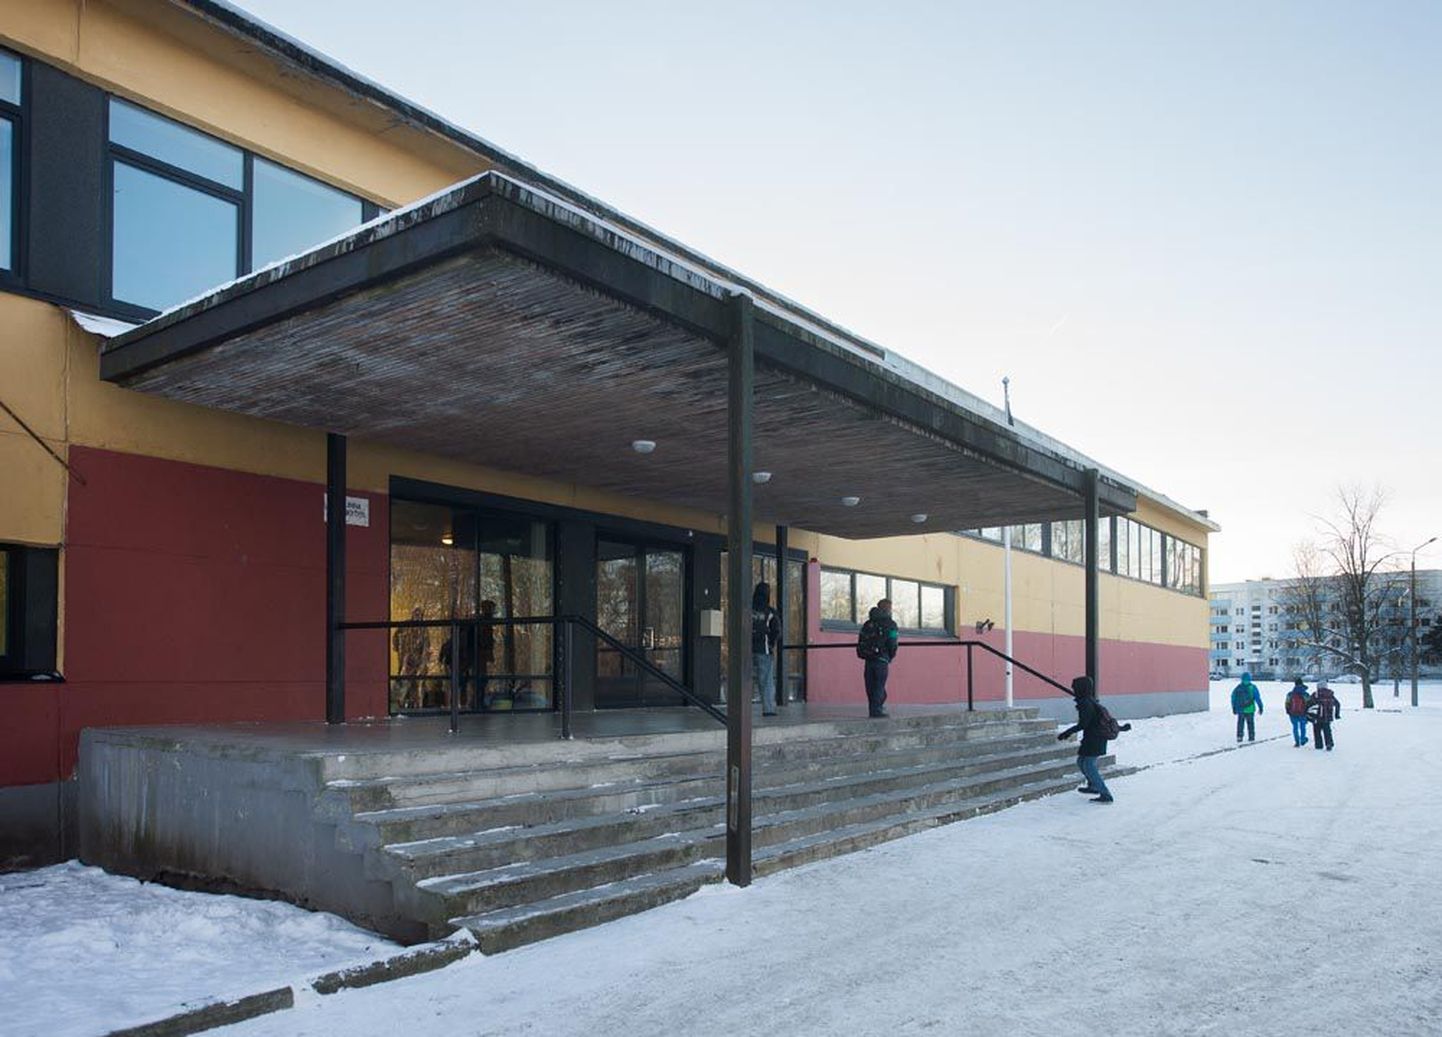 Tallinna 37. keskkool on üks väheseid remontimata koolimaju Mustamäel. Ka see võib olla üks õpilaste vähesuse põhjusi – 800 lapsele mõeldud majas omandab teadmisi 125 poissi ja tüdrukut.